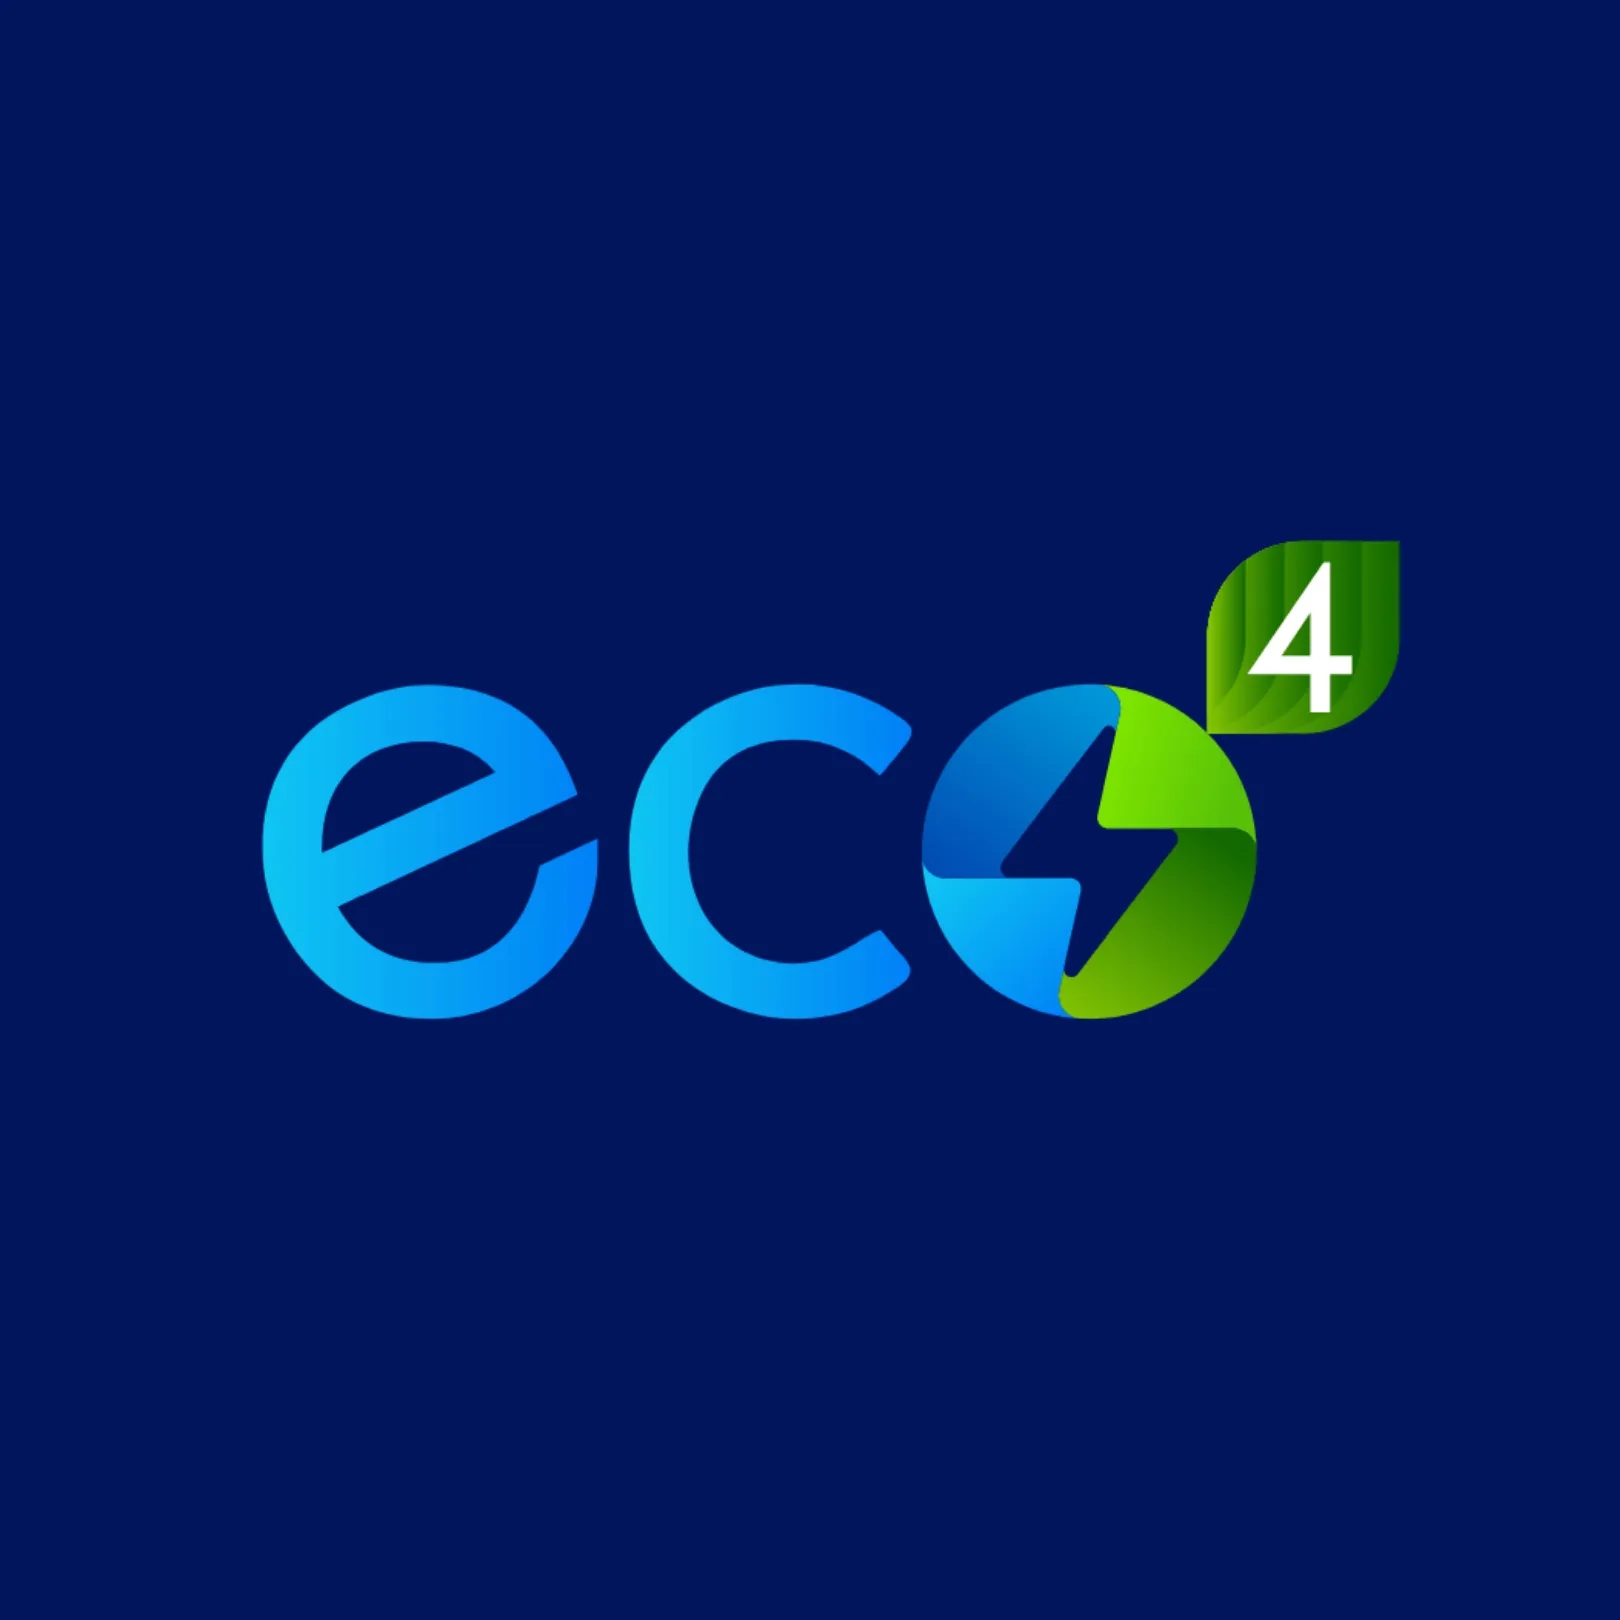 Eco4 Logo